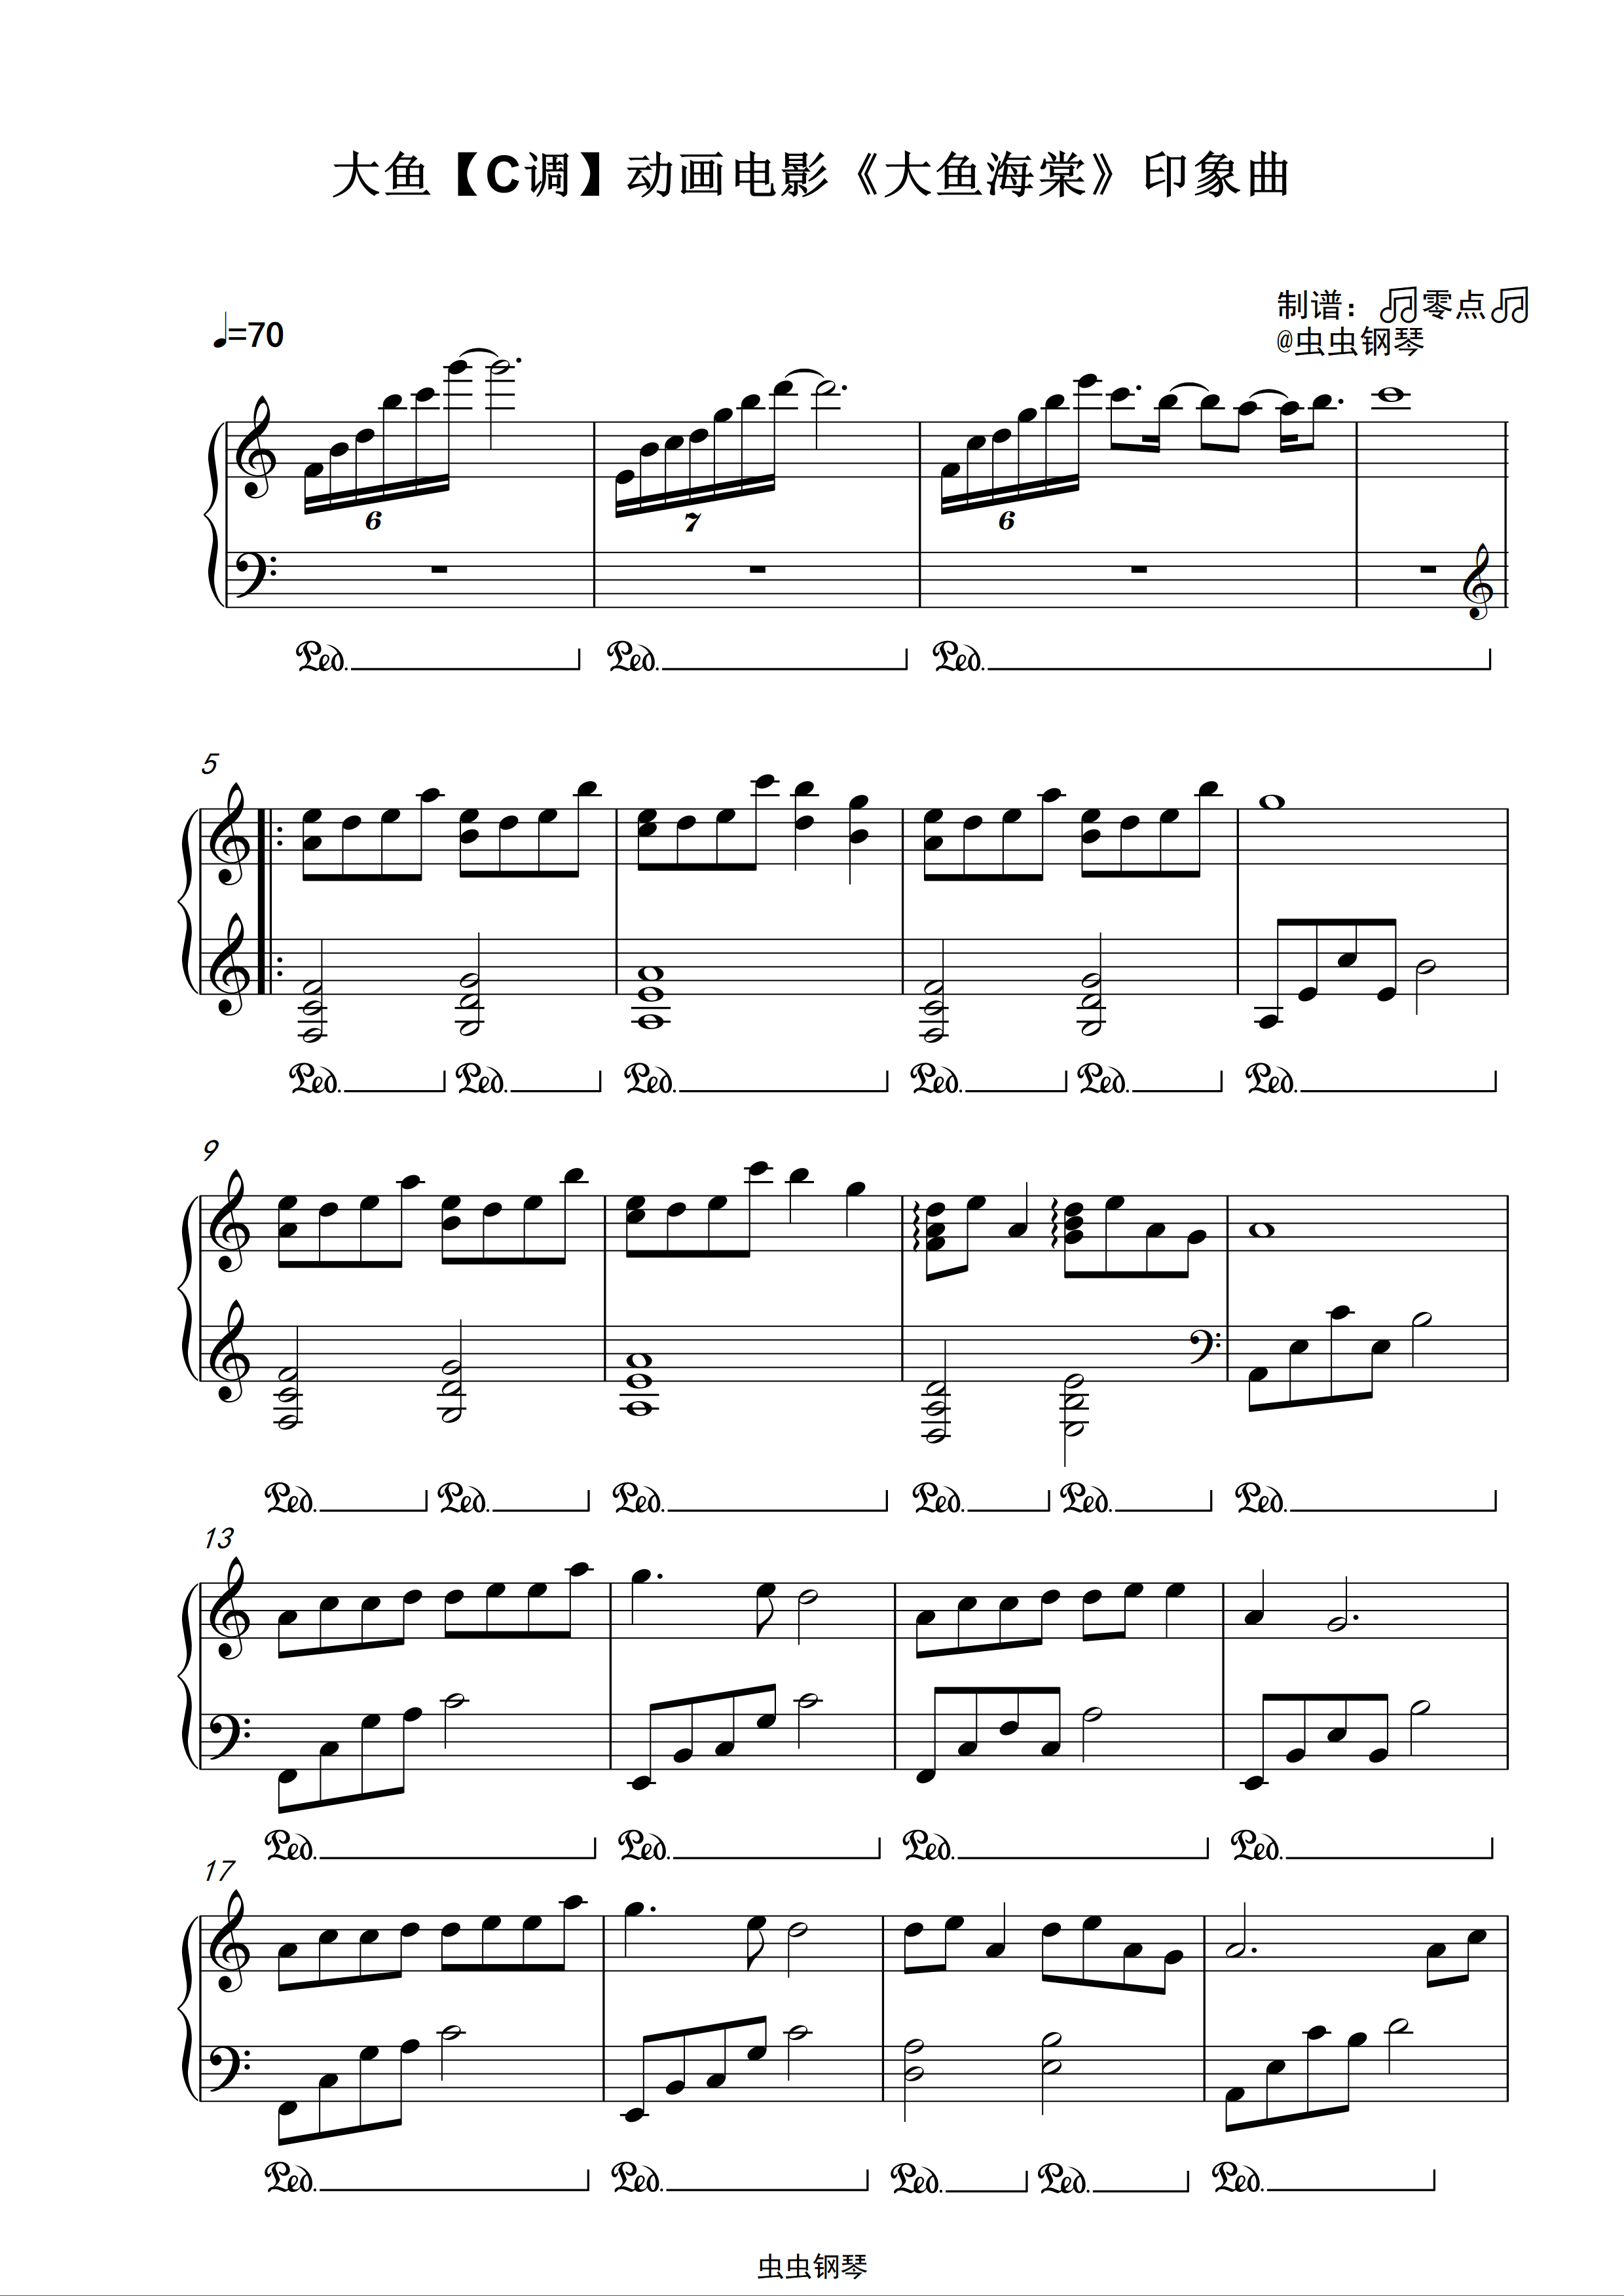 大鱼海棠完整版钢琴谱图片